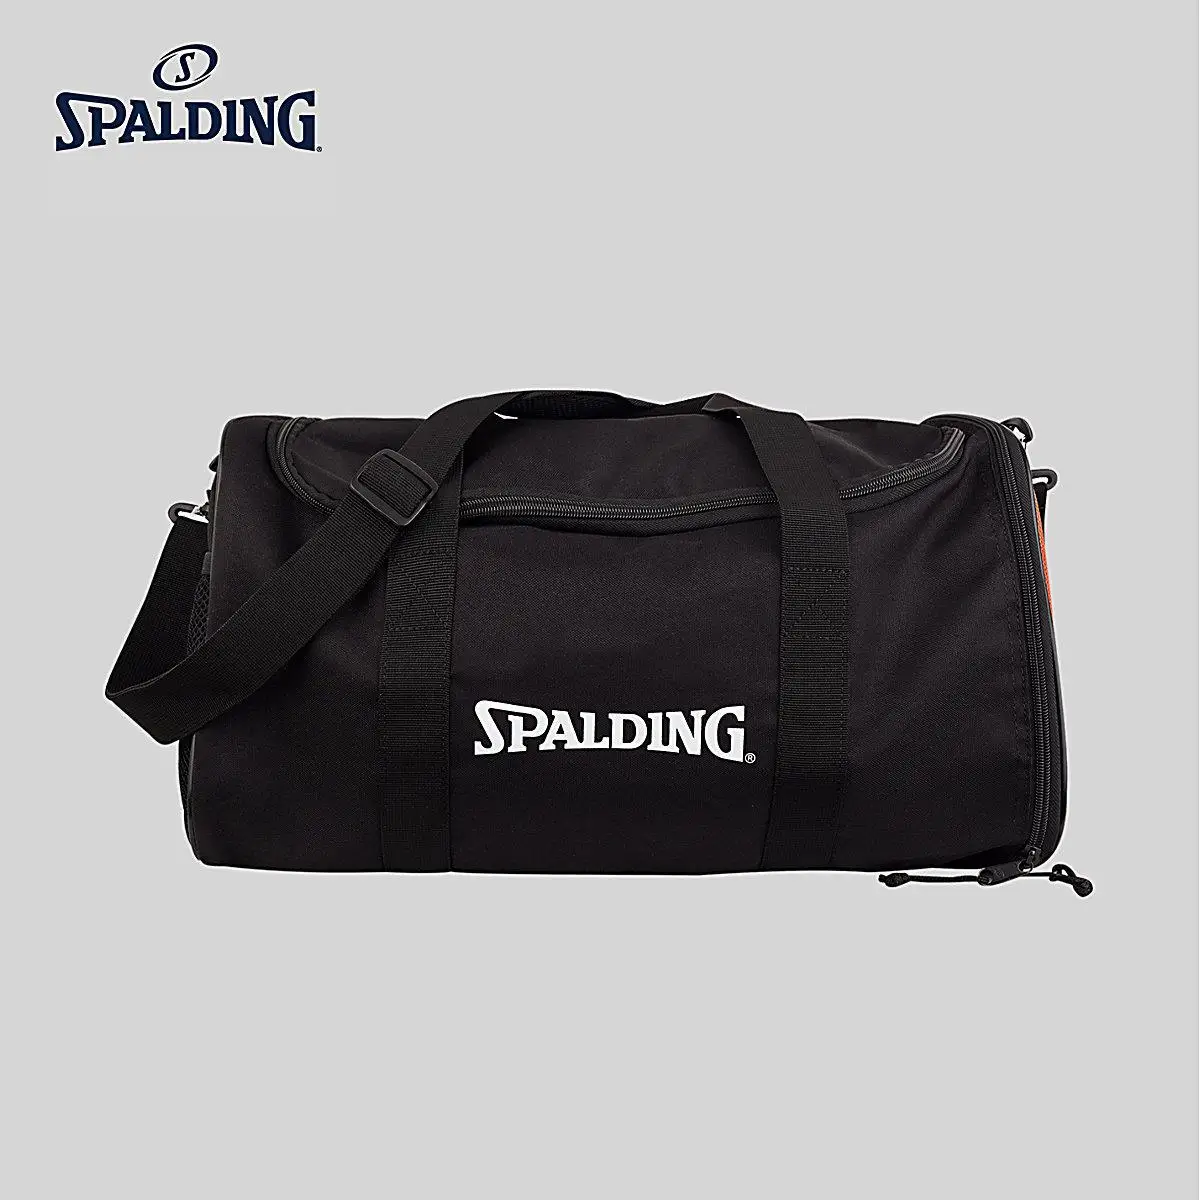 Spalding досуг спортивные сумки наклонная одно плечо баскетбольные сумки 30041